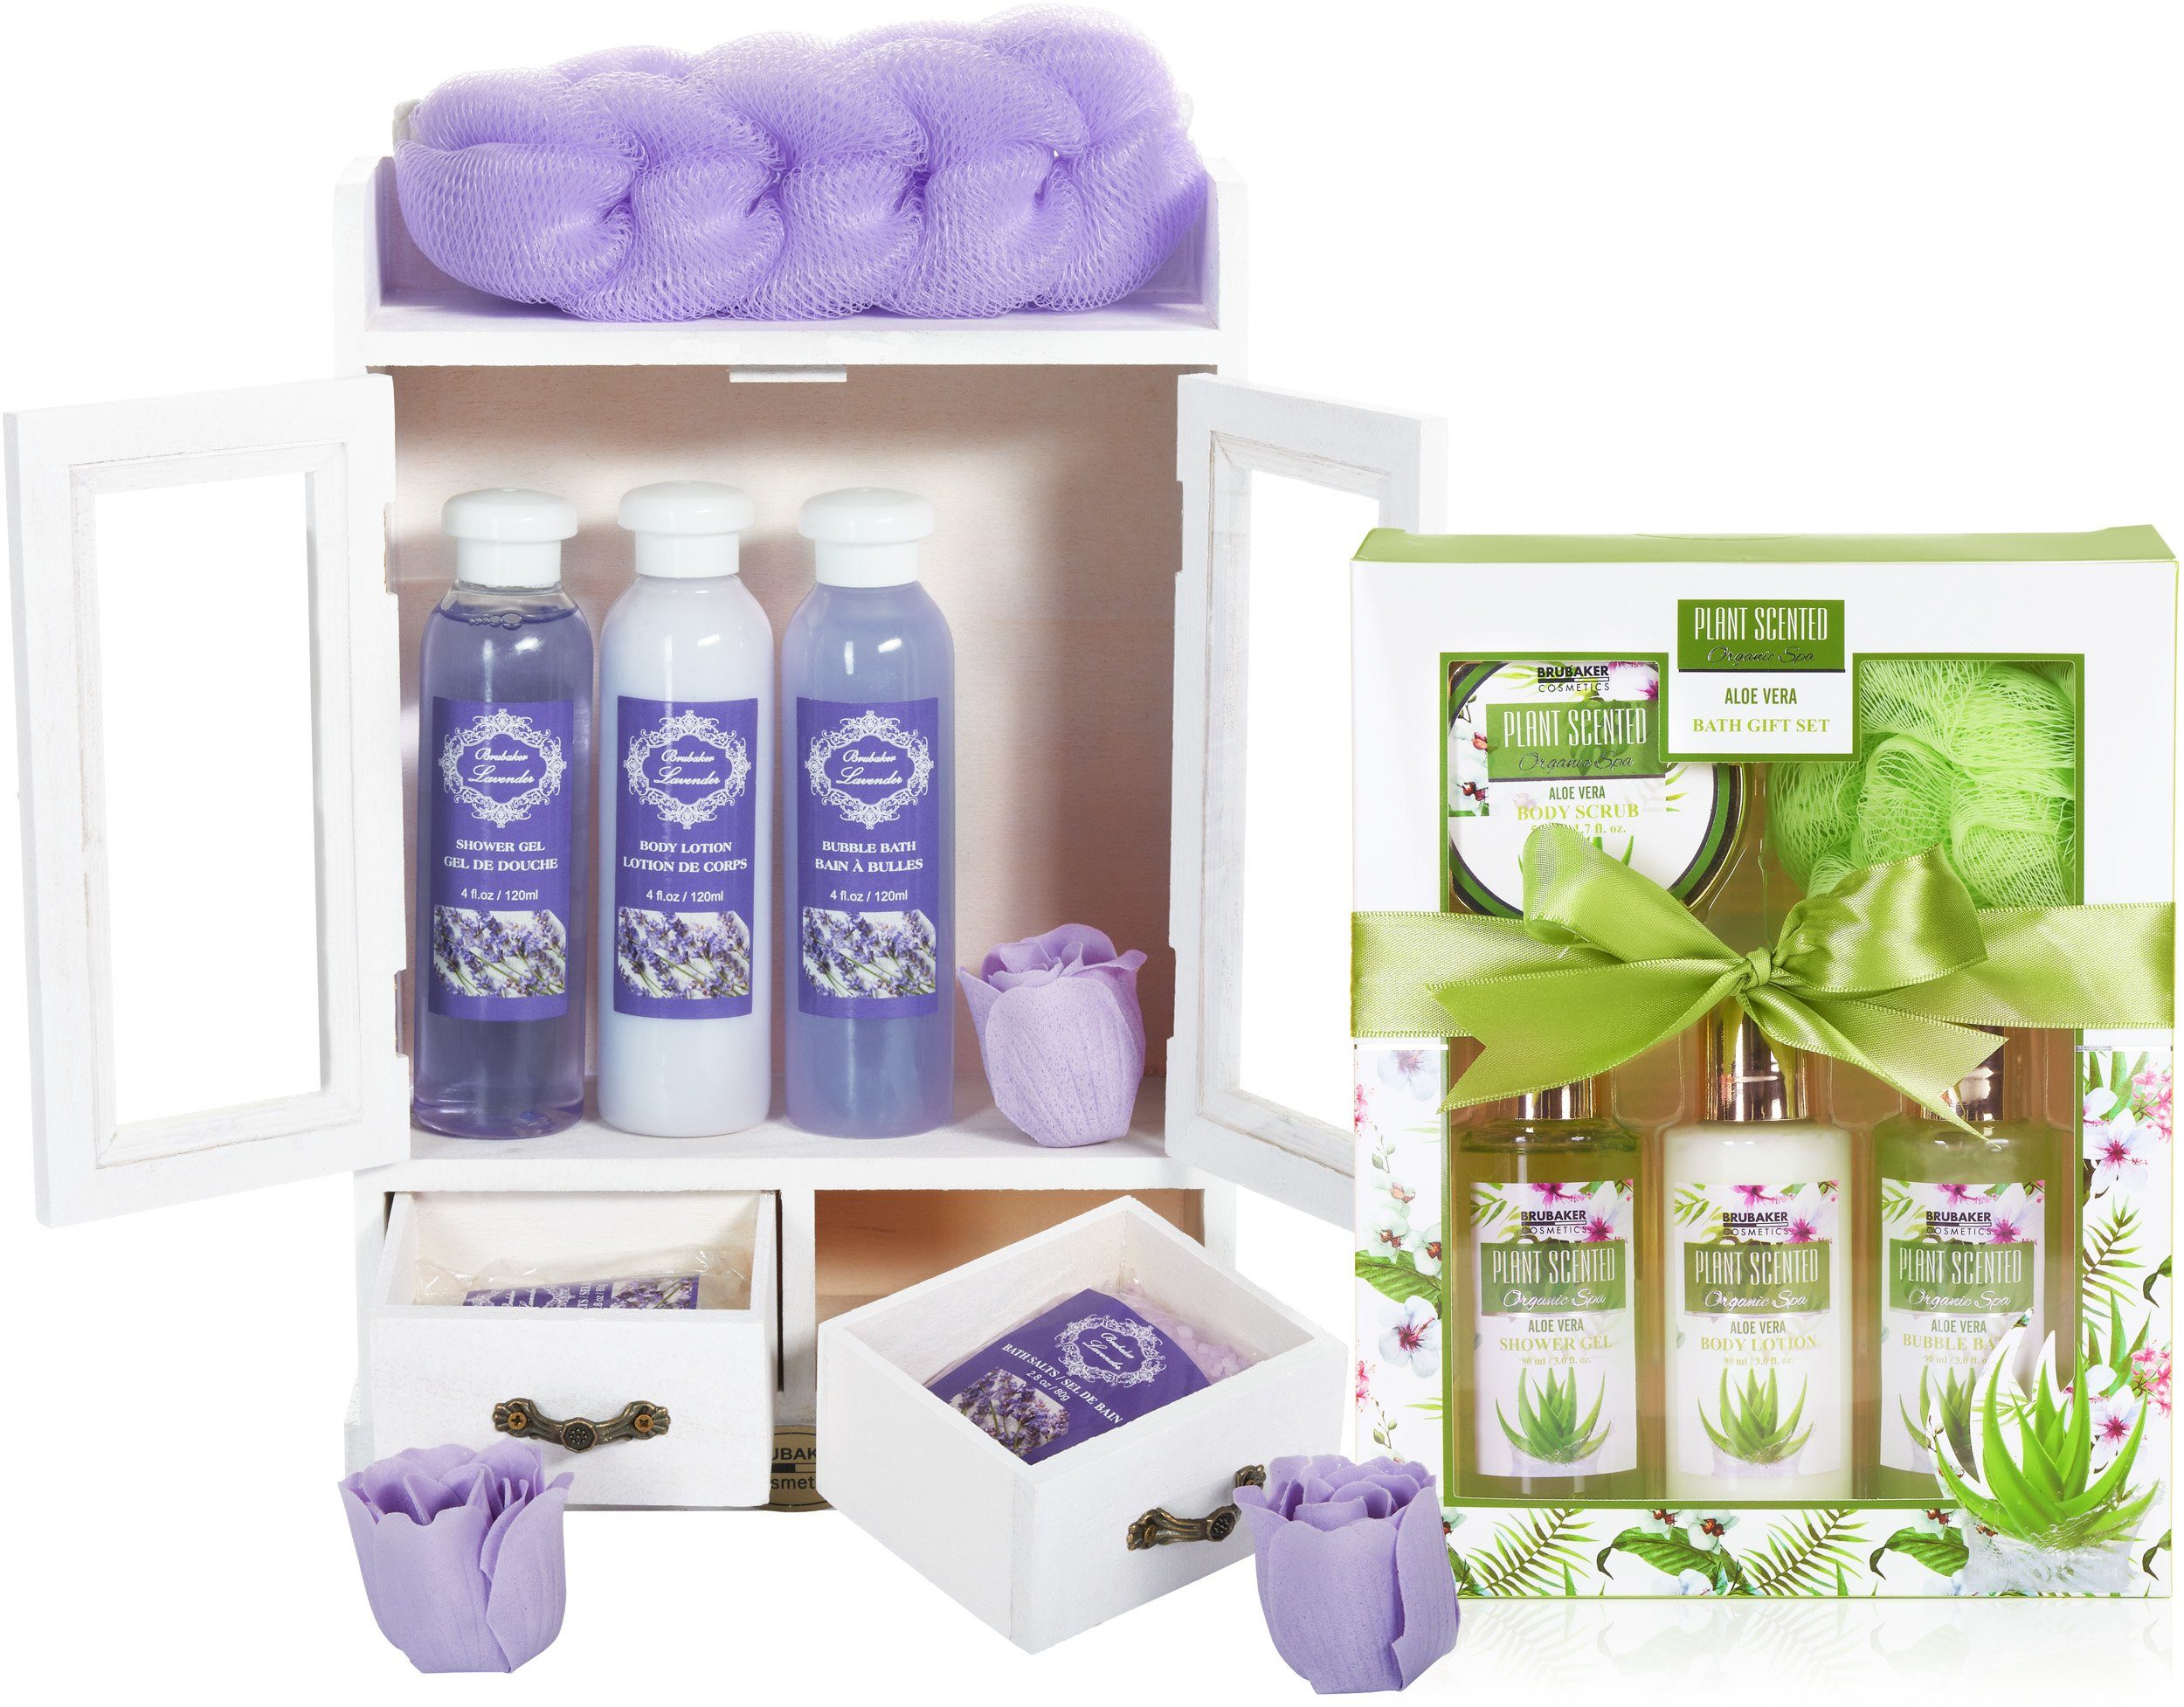 BRUBAKER Pflege-Geschenkset 2 in 1 Pflegeset Lavendel & Aloe Vera - Wellness Set, 15-tlg., Damen Dusch- und Badeset - Frauen Beauty Geschenkset mit Dekoration